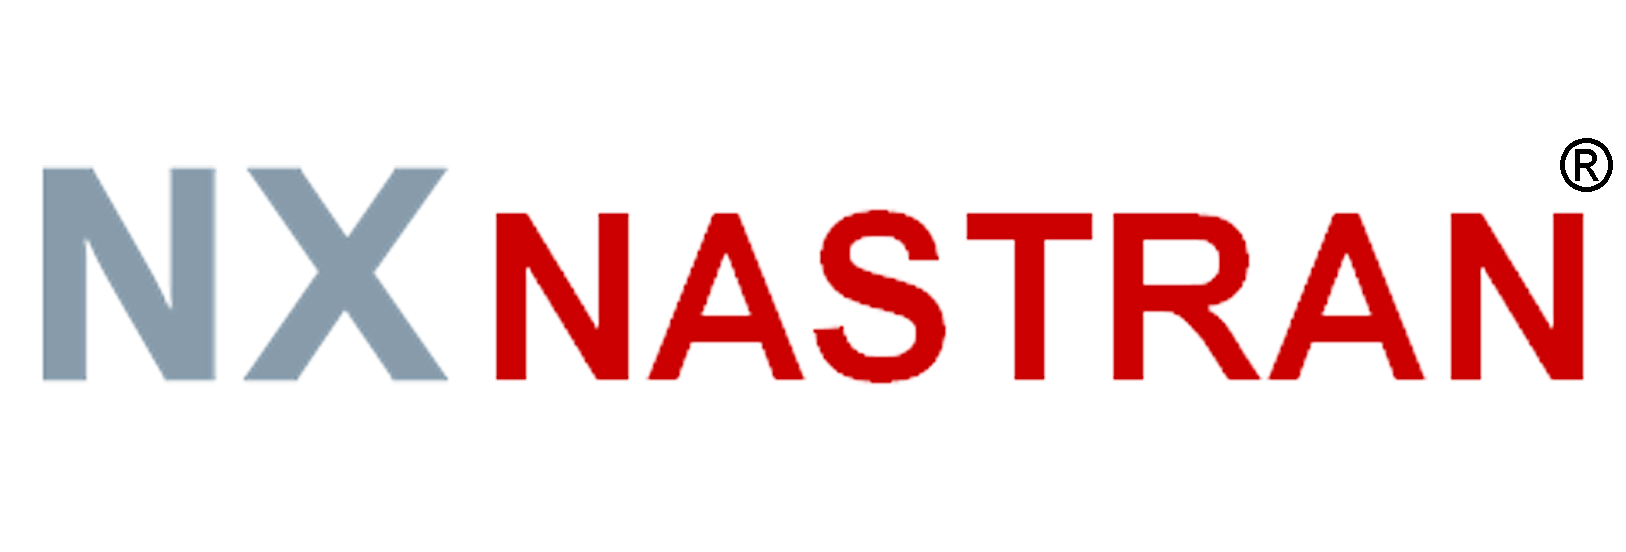 NX-Nastran